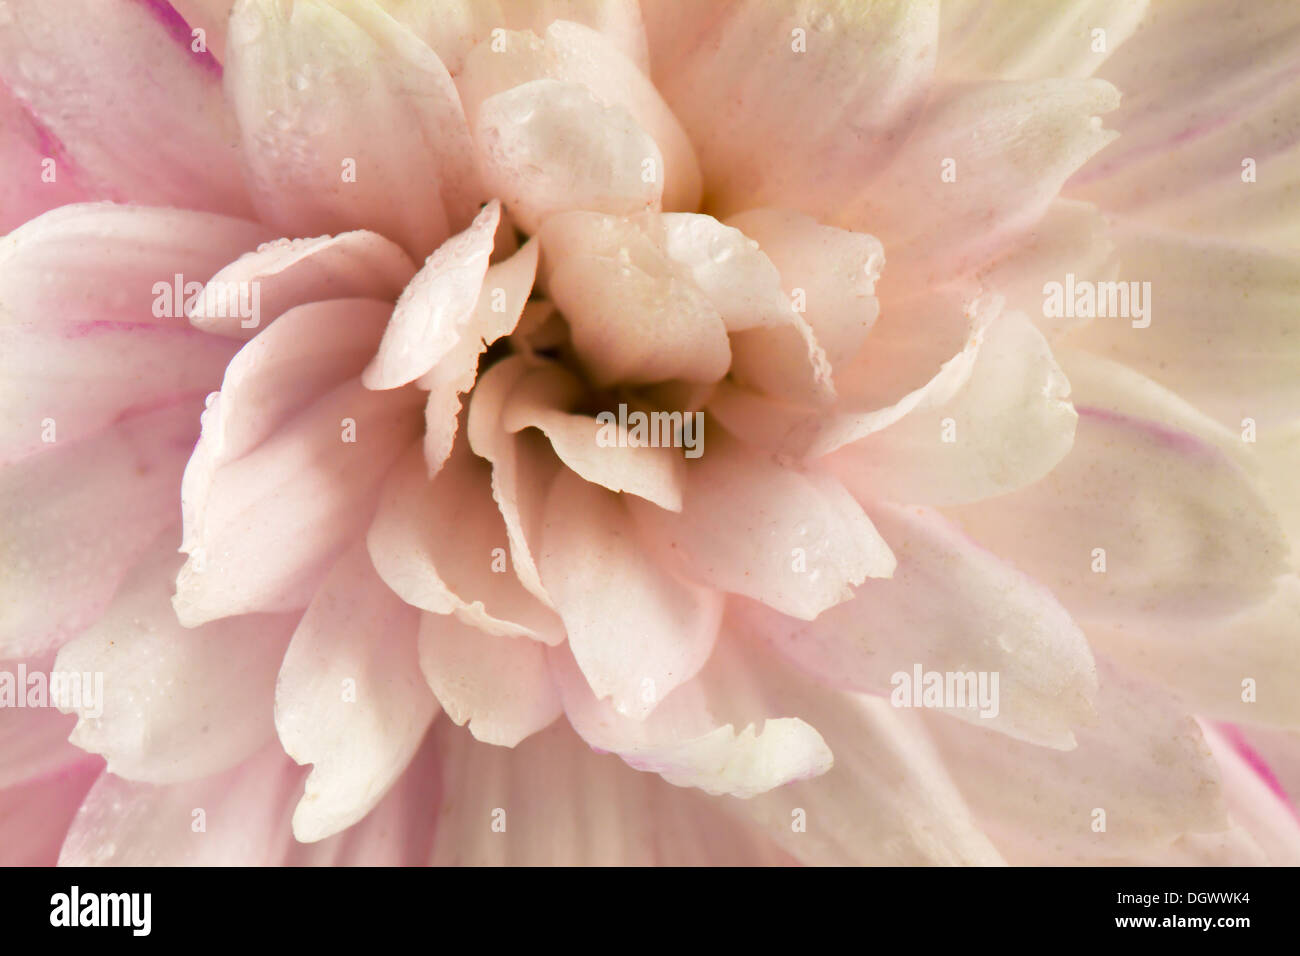 White chrysanthemum macro photography Stock Photo